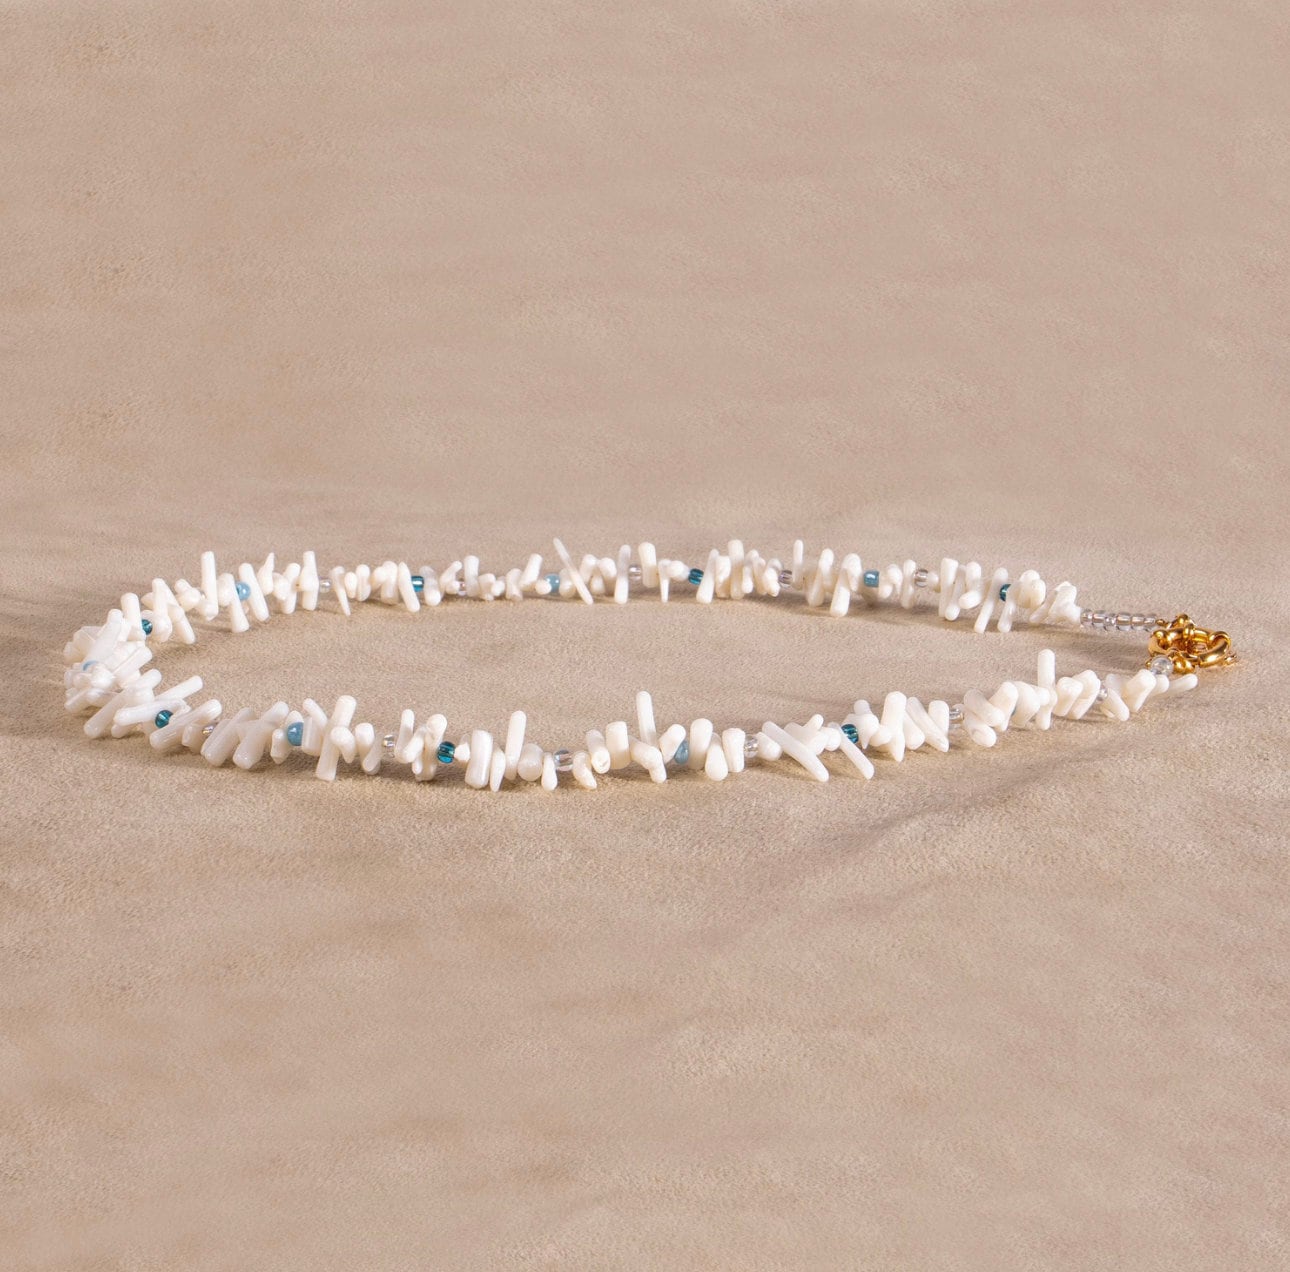 Koralle (keine echte) Halskette weiß aus Steinen vergoldet